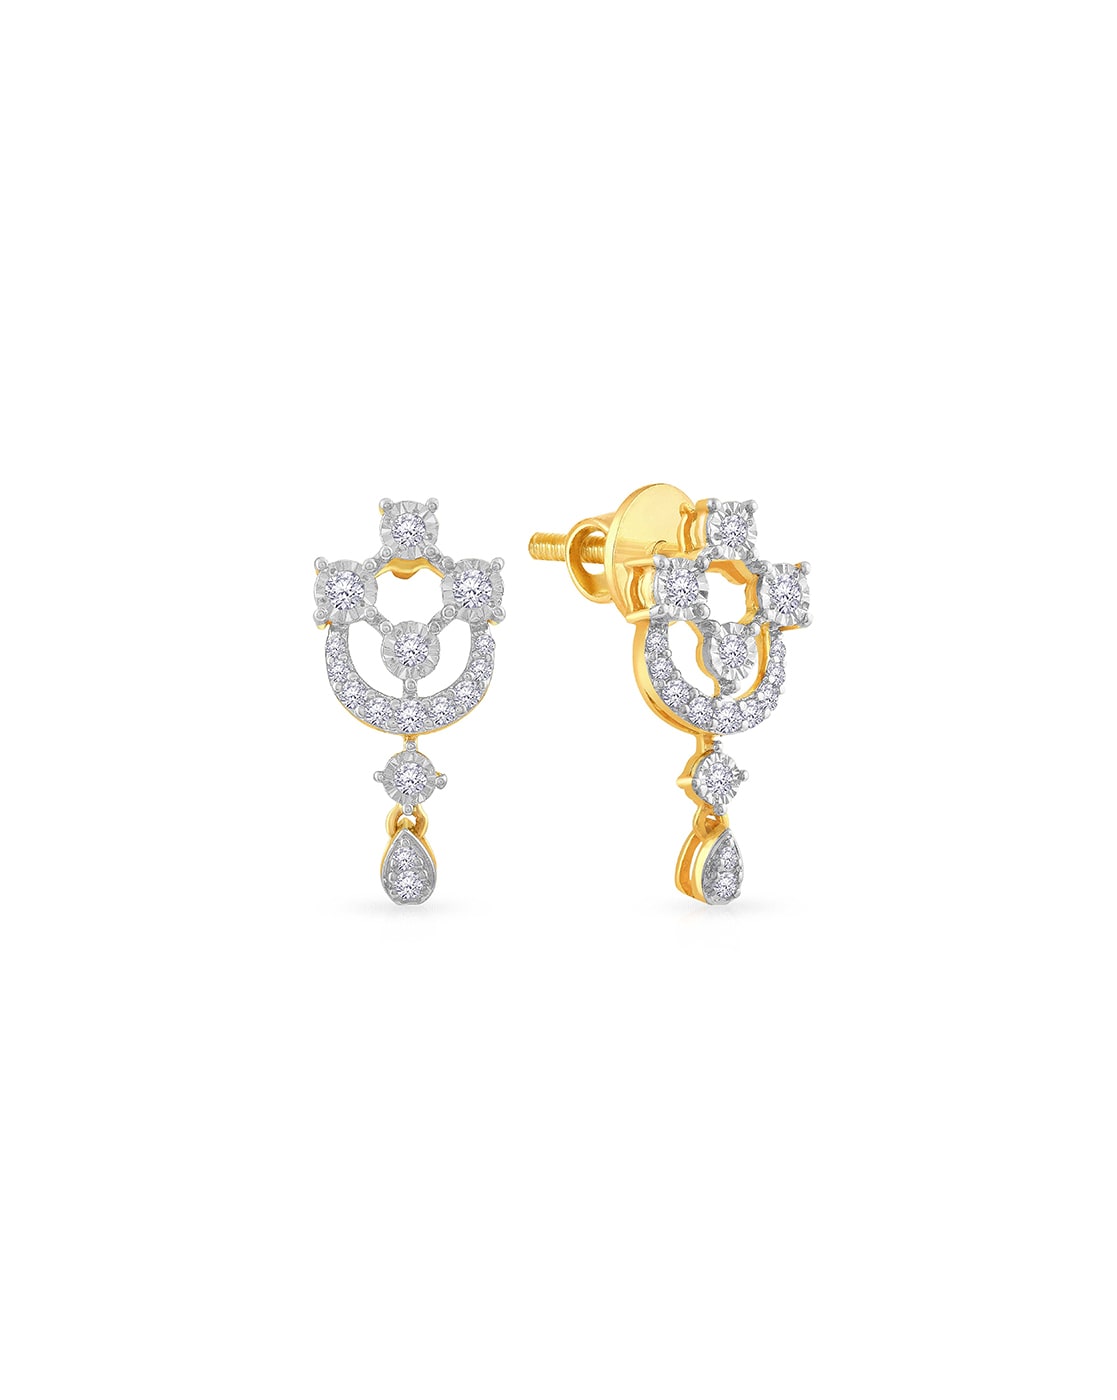 Tiny Flower Stud Earring Small Diamond Earring Dainty Post | Etsy | Stud  earrings, Gold minimalist jewelry, Hoop earrings small